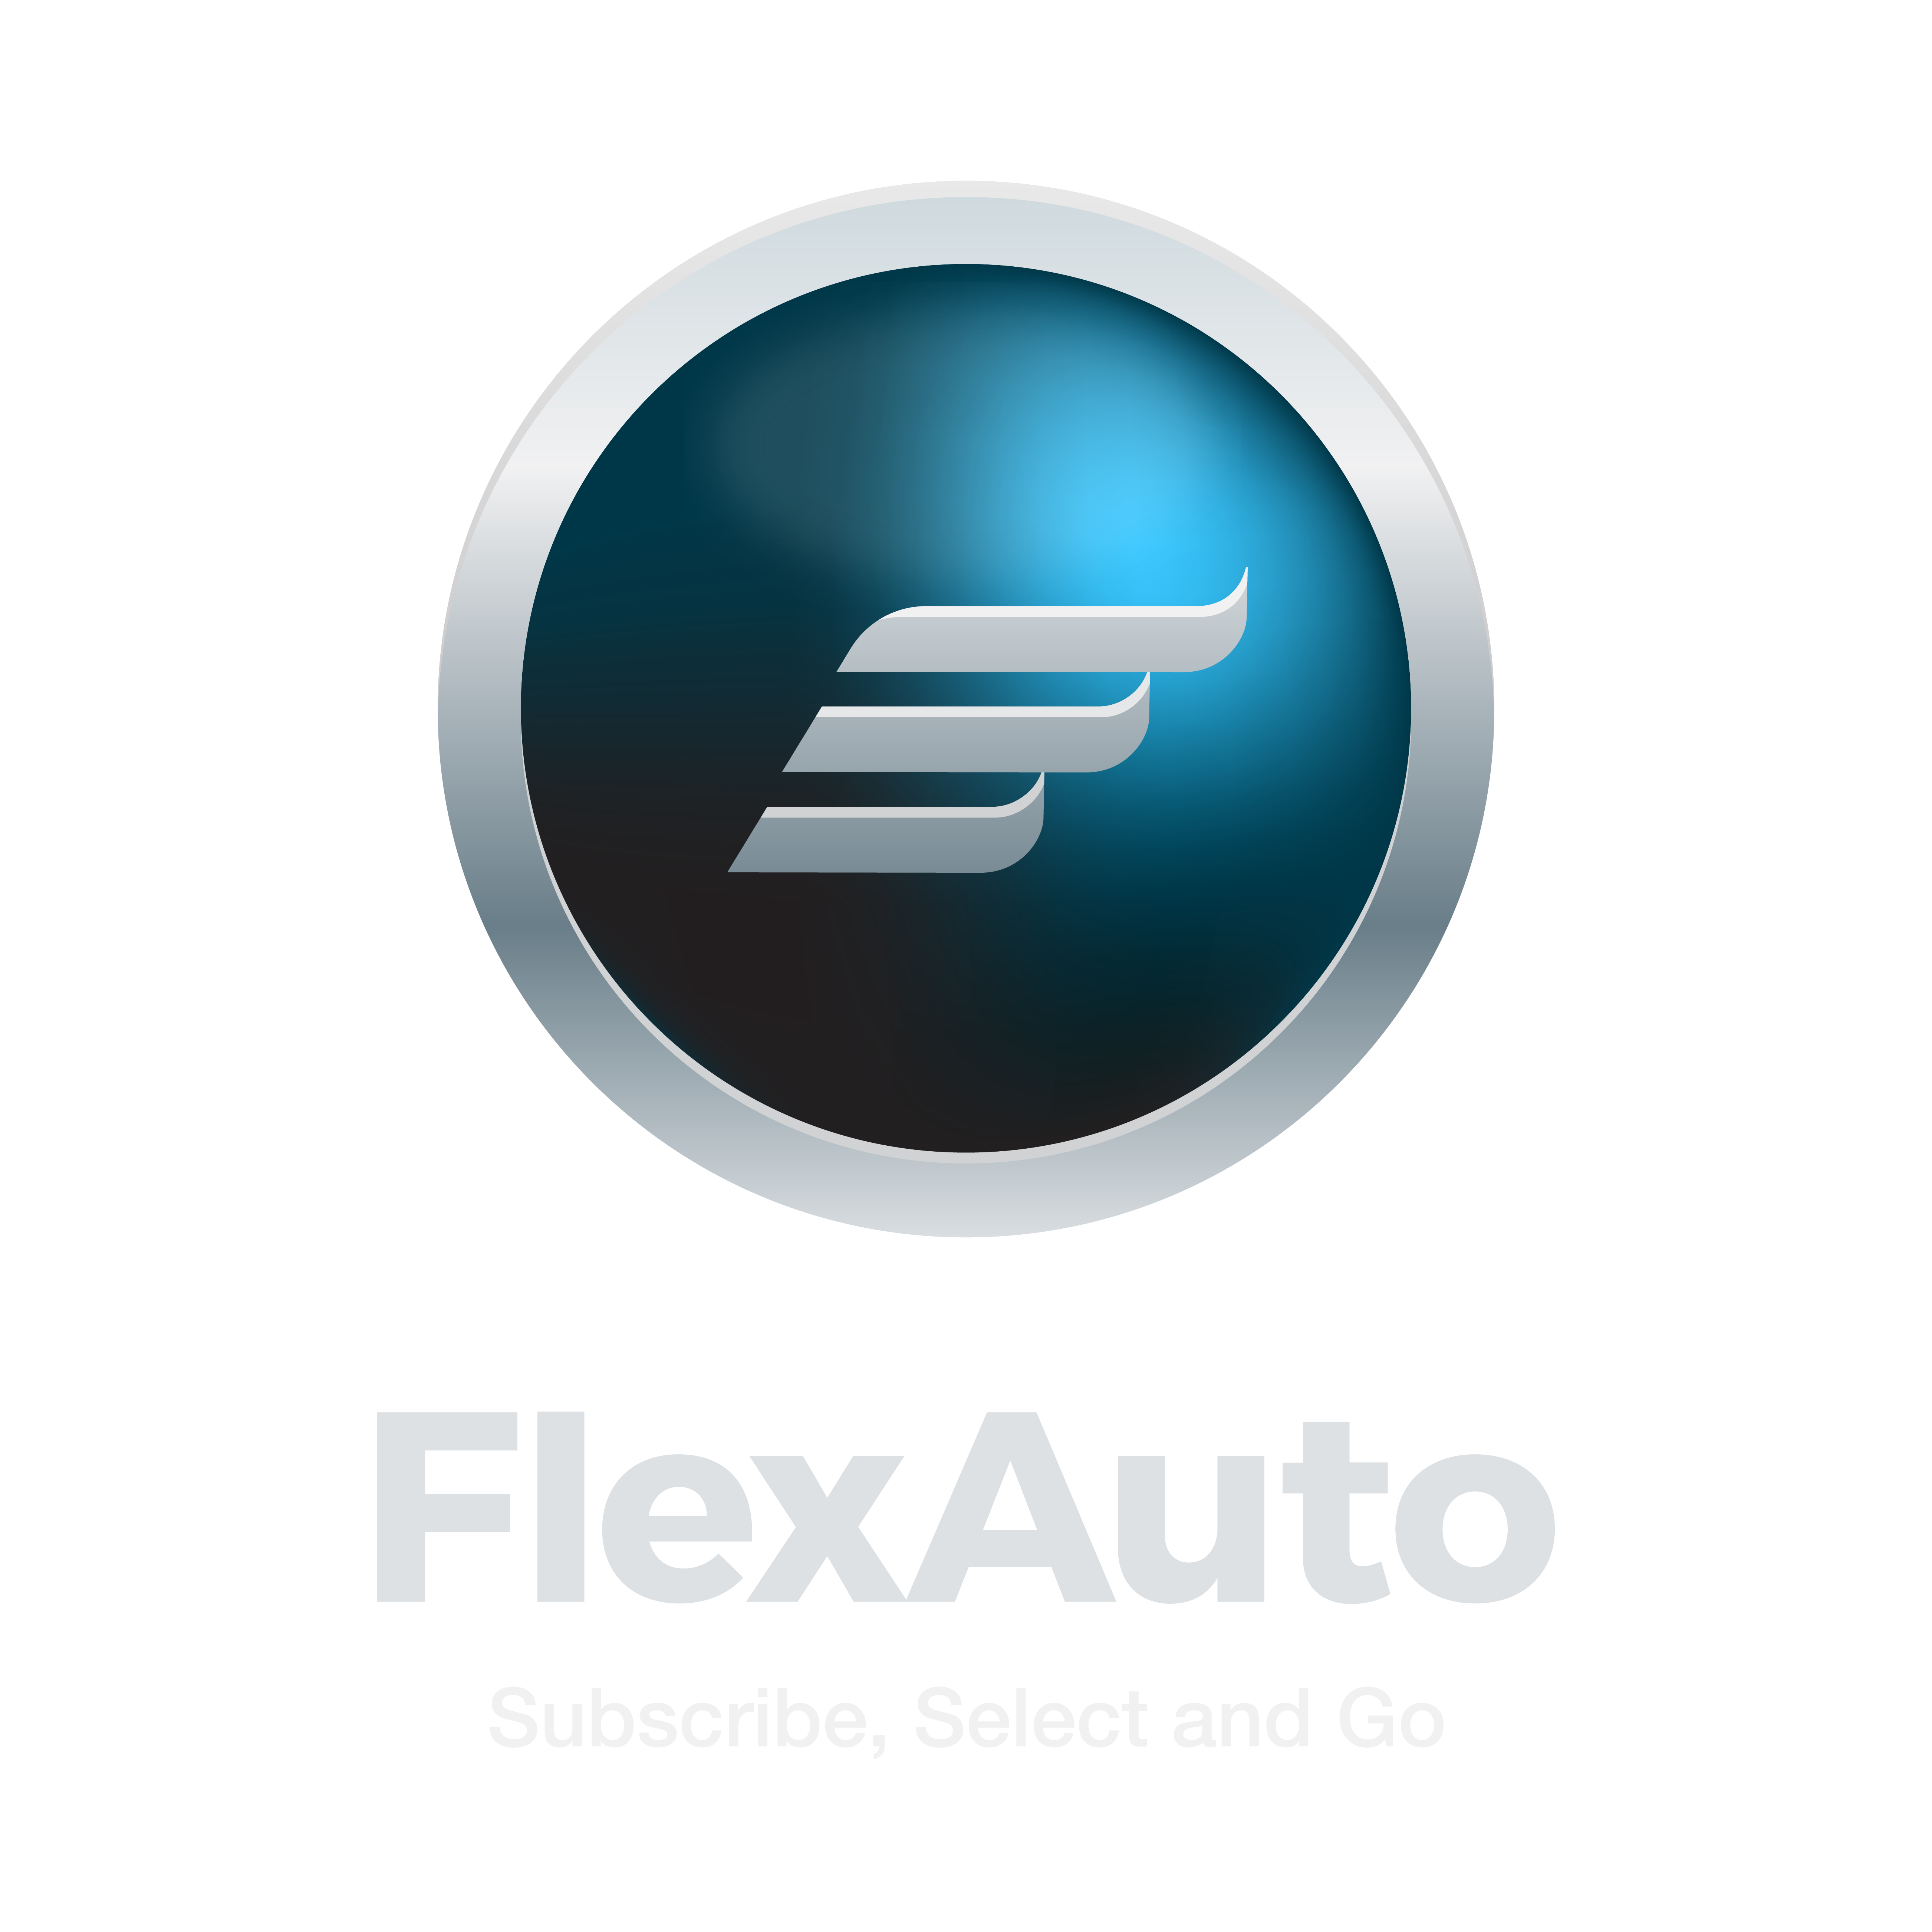 FlexAuto - Coming Soon!